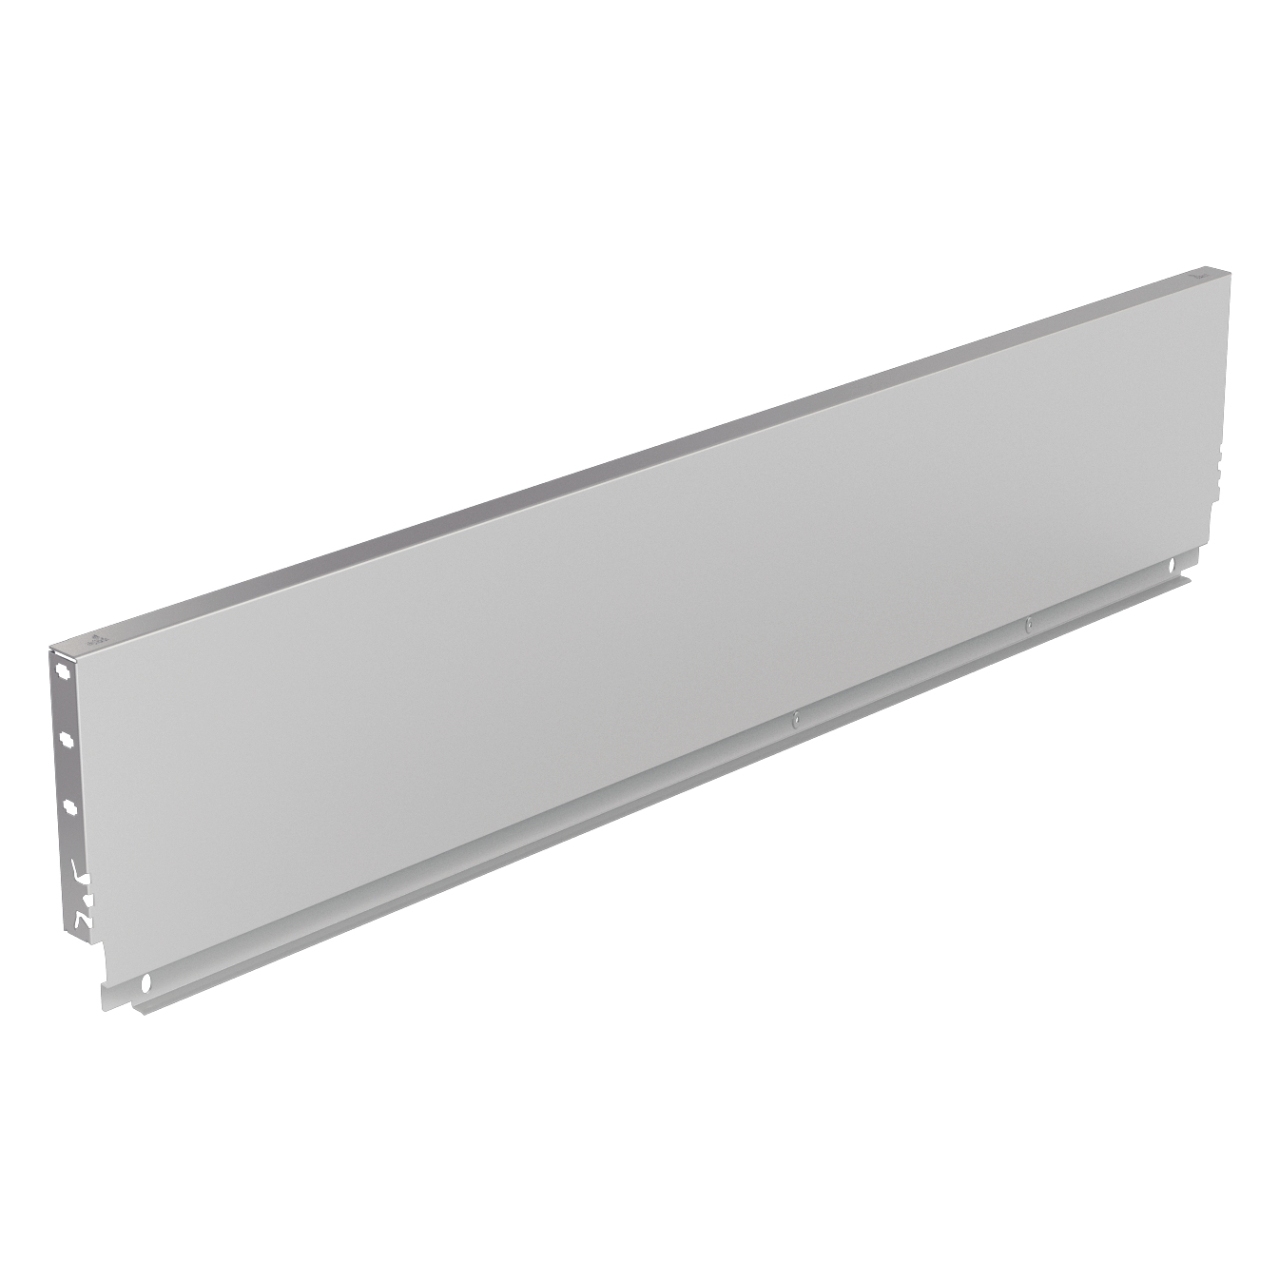 HETTICH Stahlrückwand ArciTech, 250 x 600 mm, weiß, 9121700